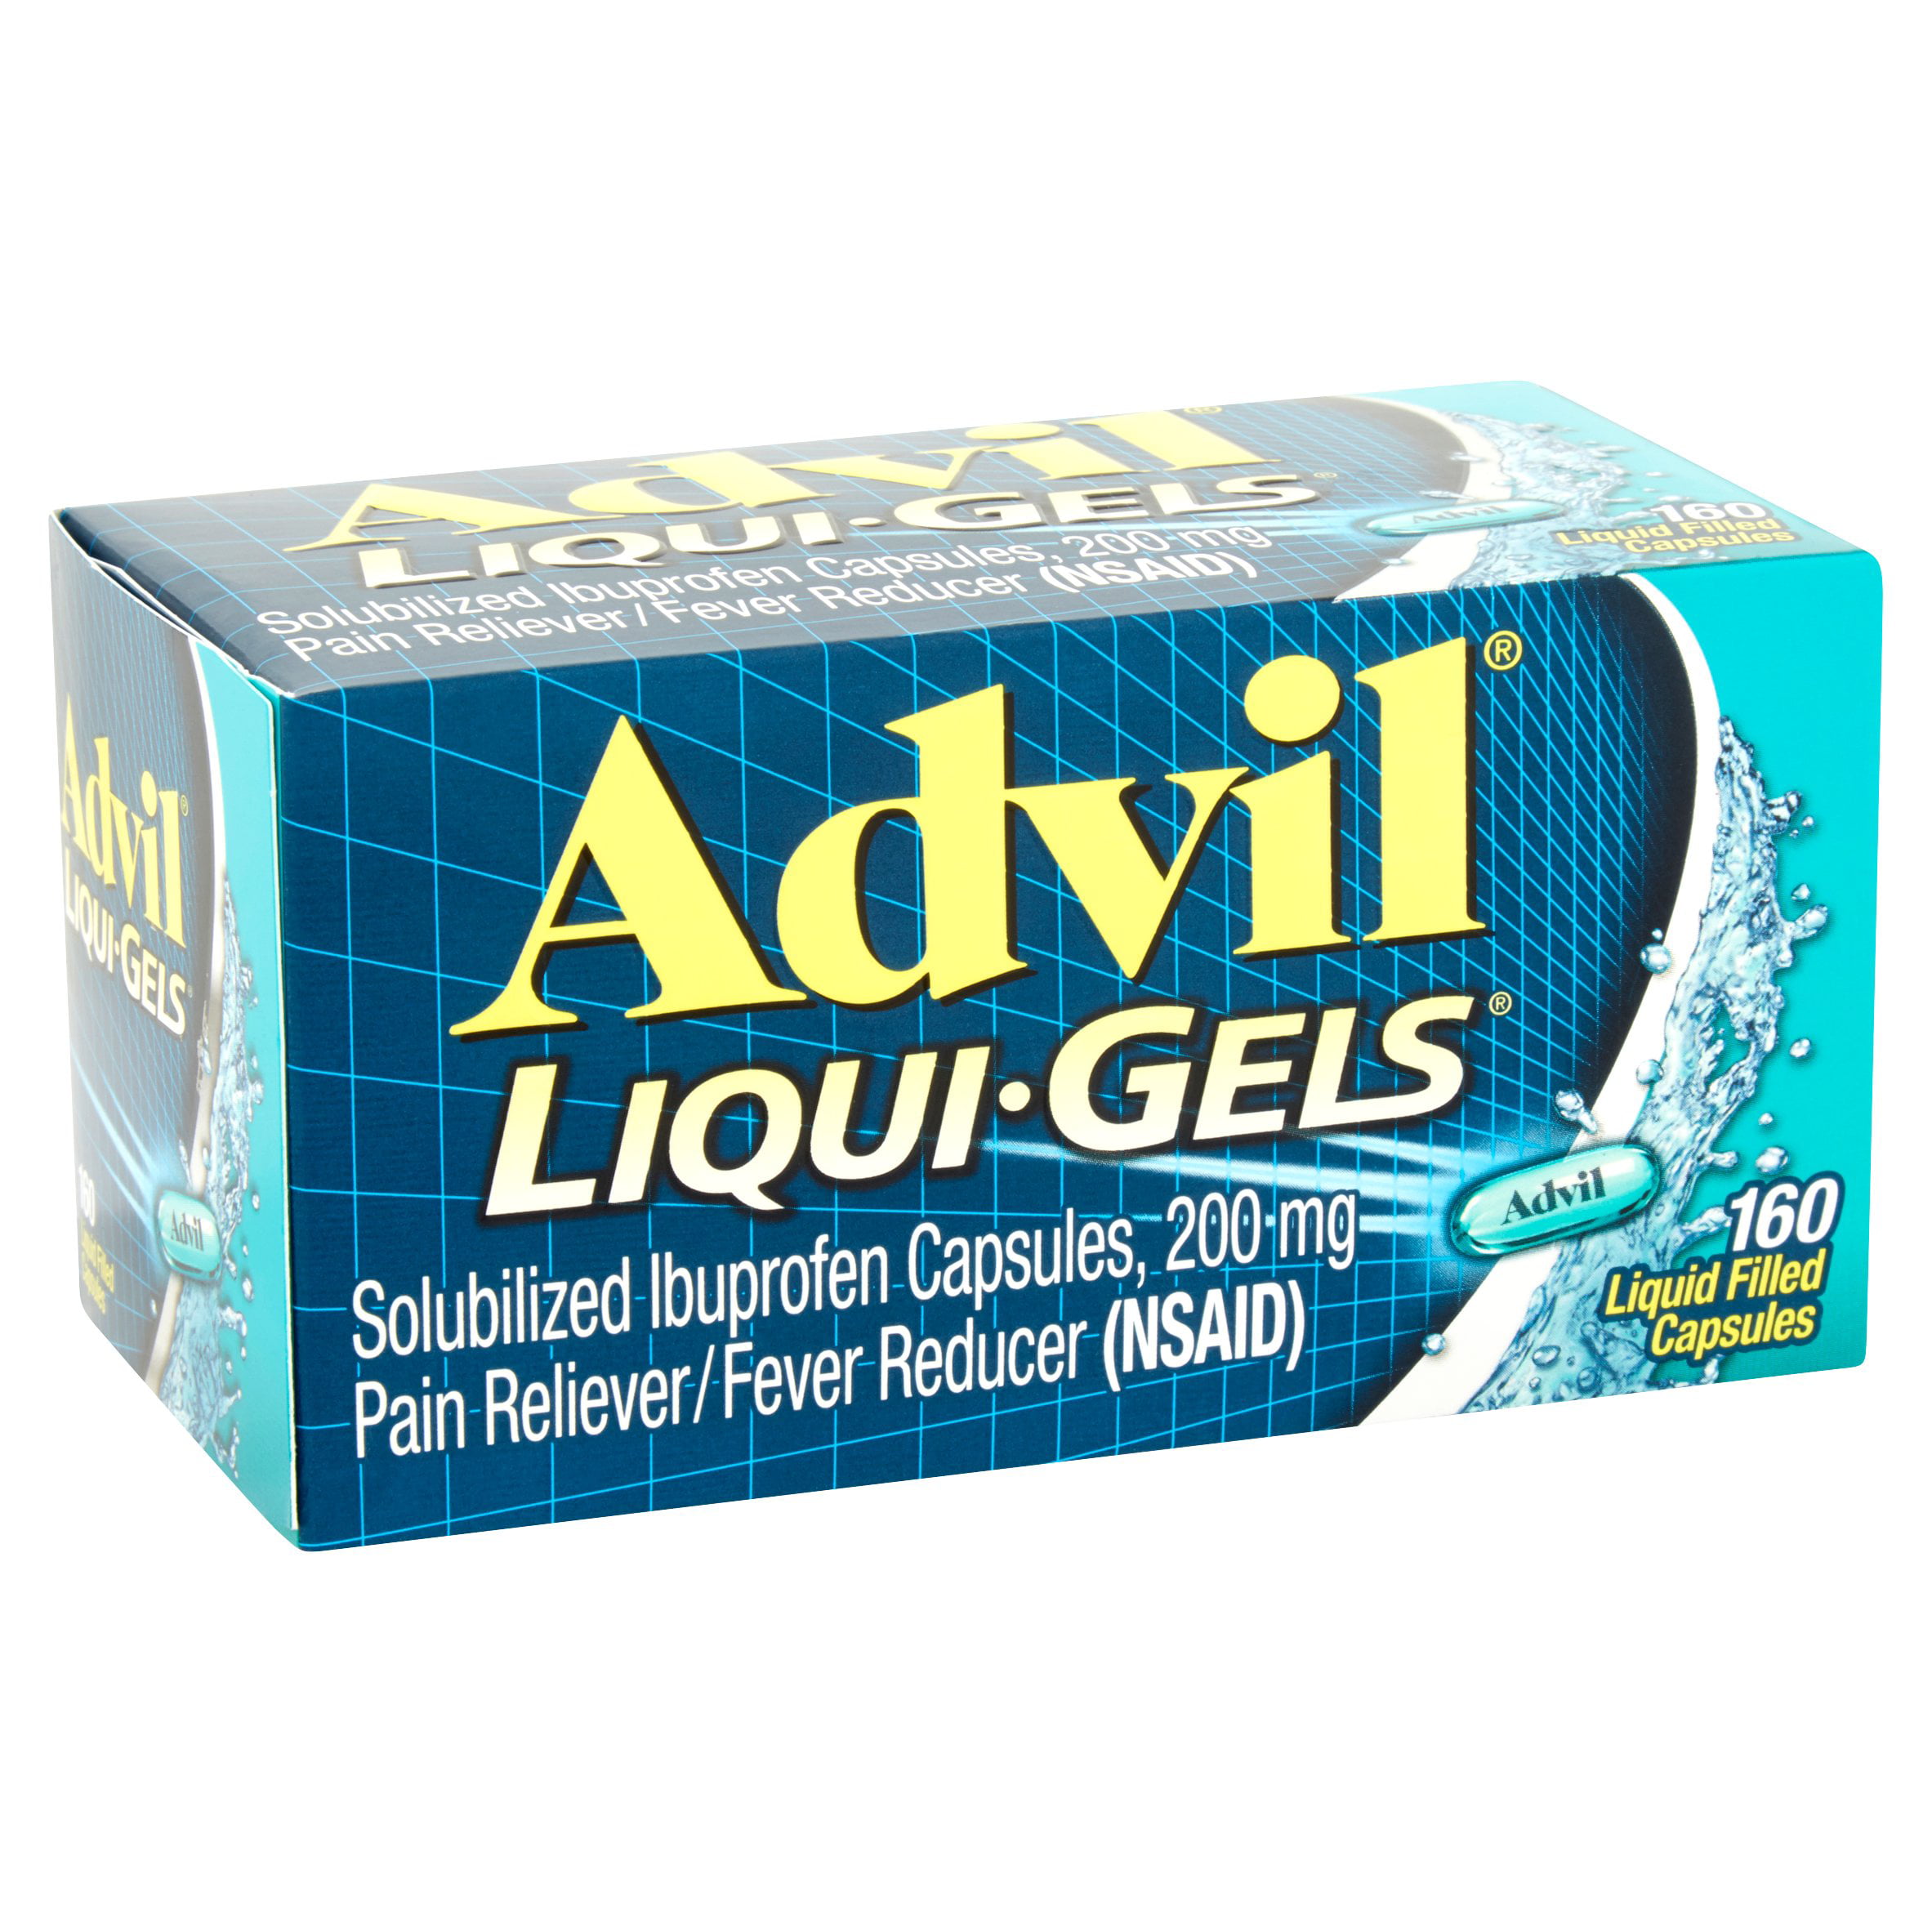 advil liqui-gels (160 count) pain reliever / fever reducer liquid